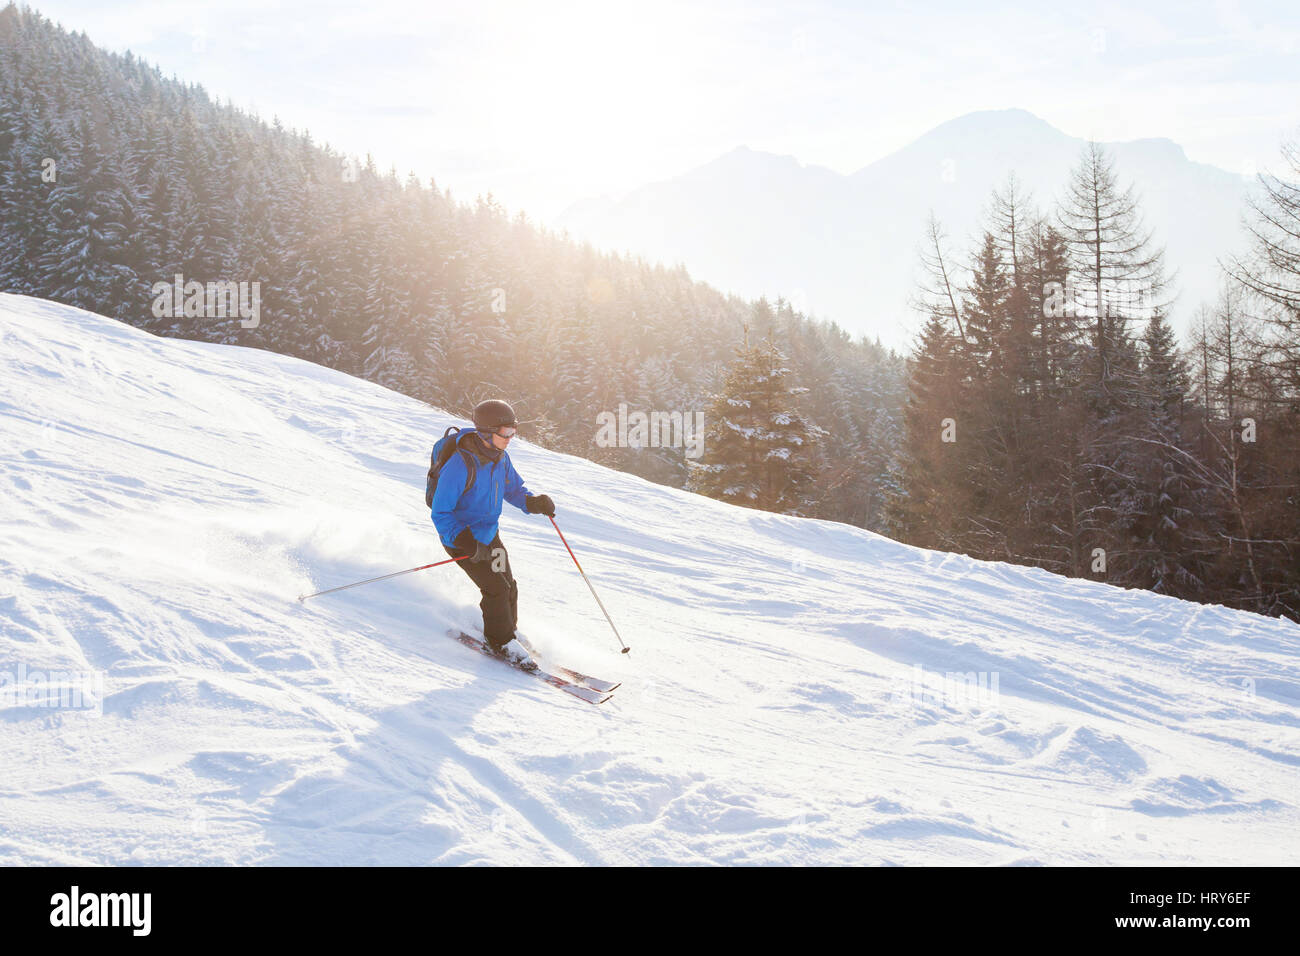 Skieur dans les montagnes au coucher du soleil, ski alpin Banque D'Images